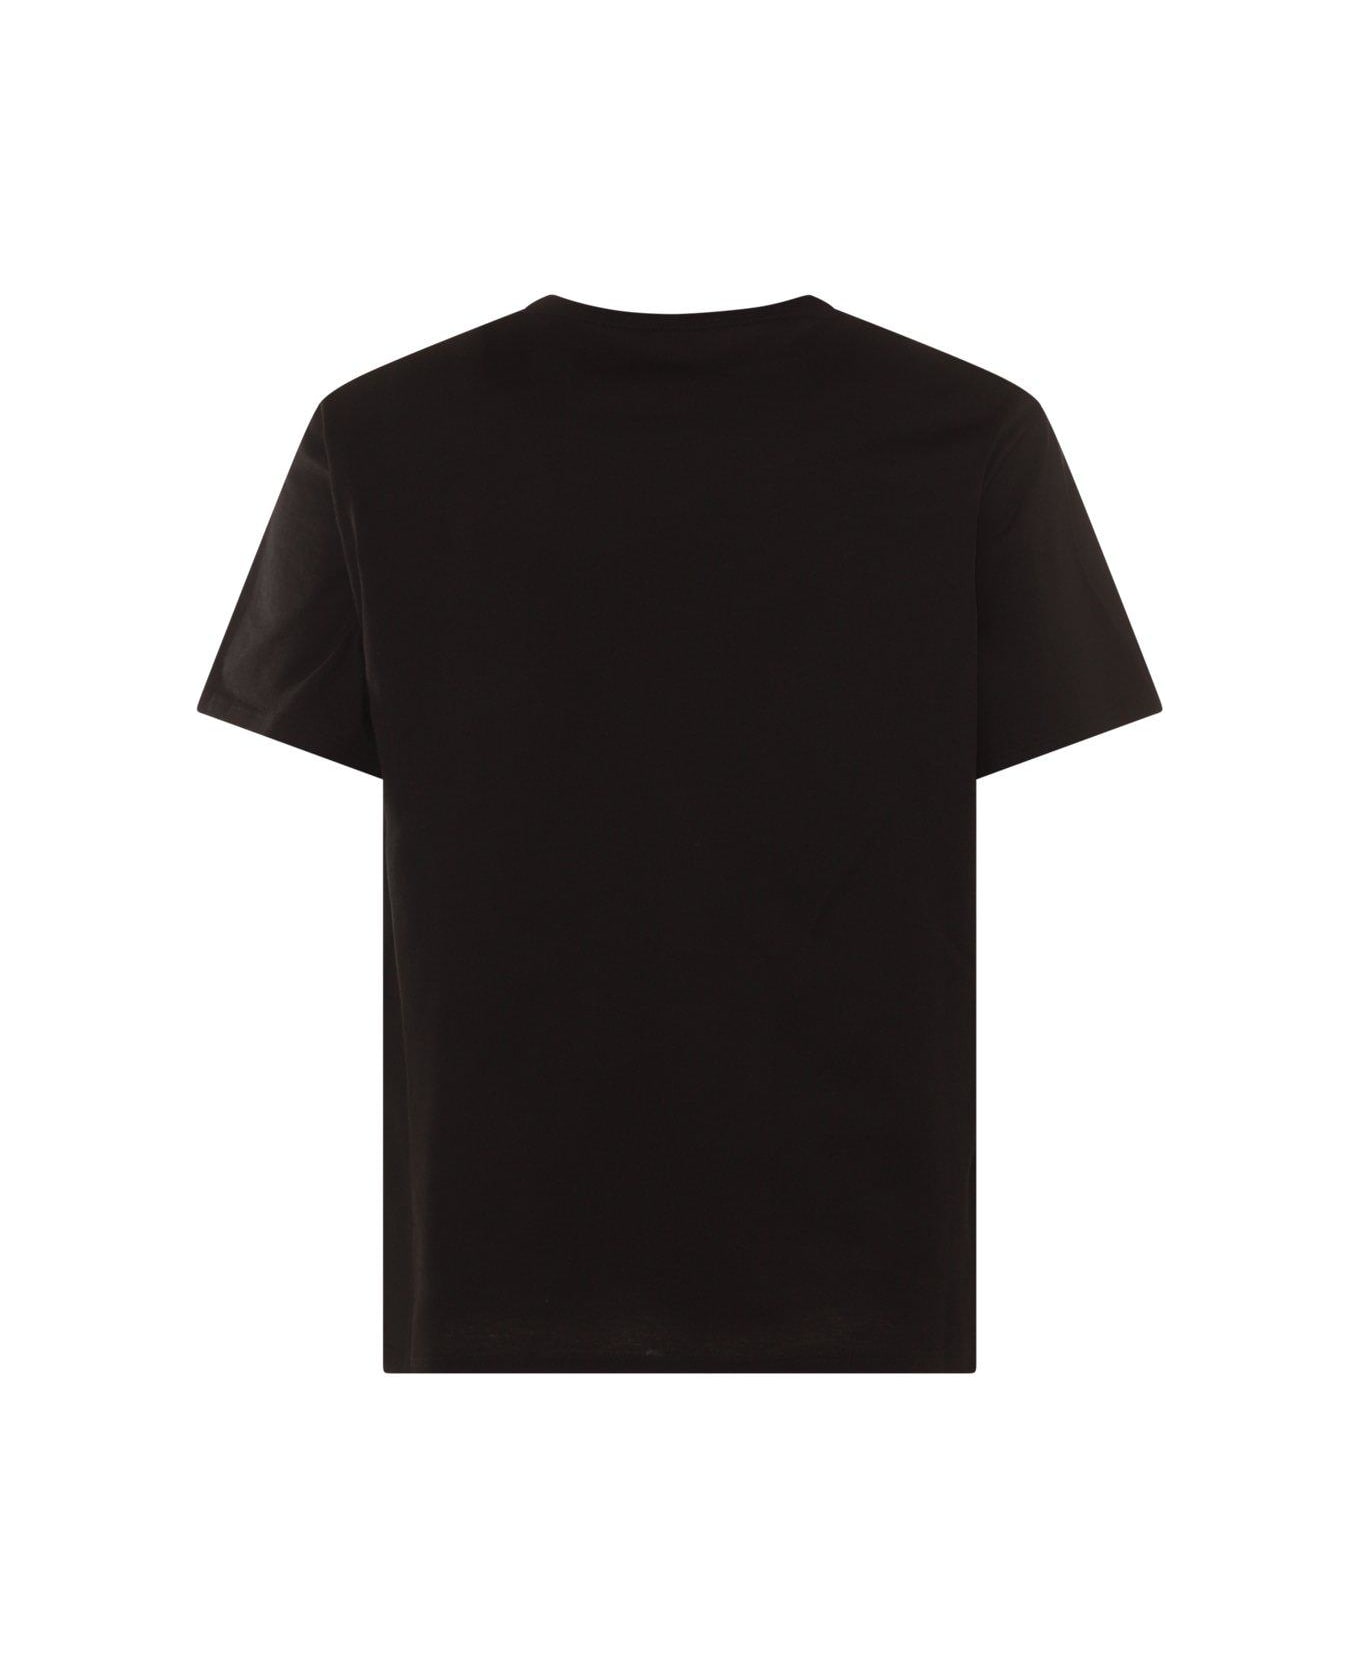 Alexander McQueen Floral Skull T-shirt - BLACK シャツ